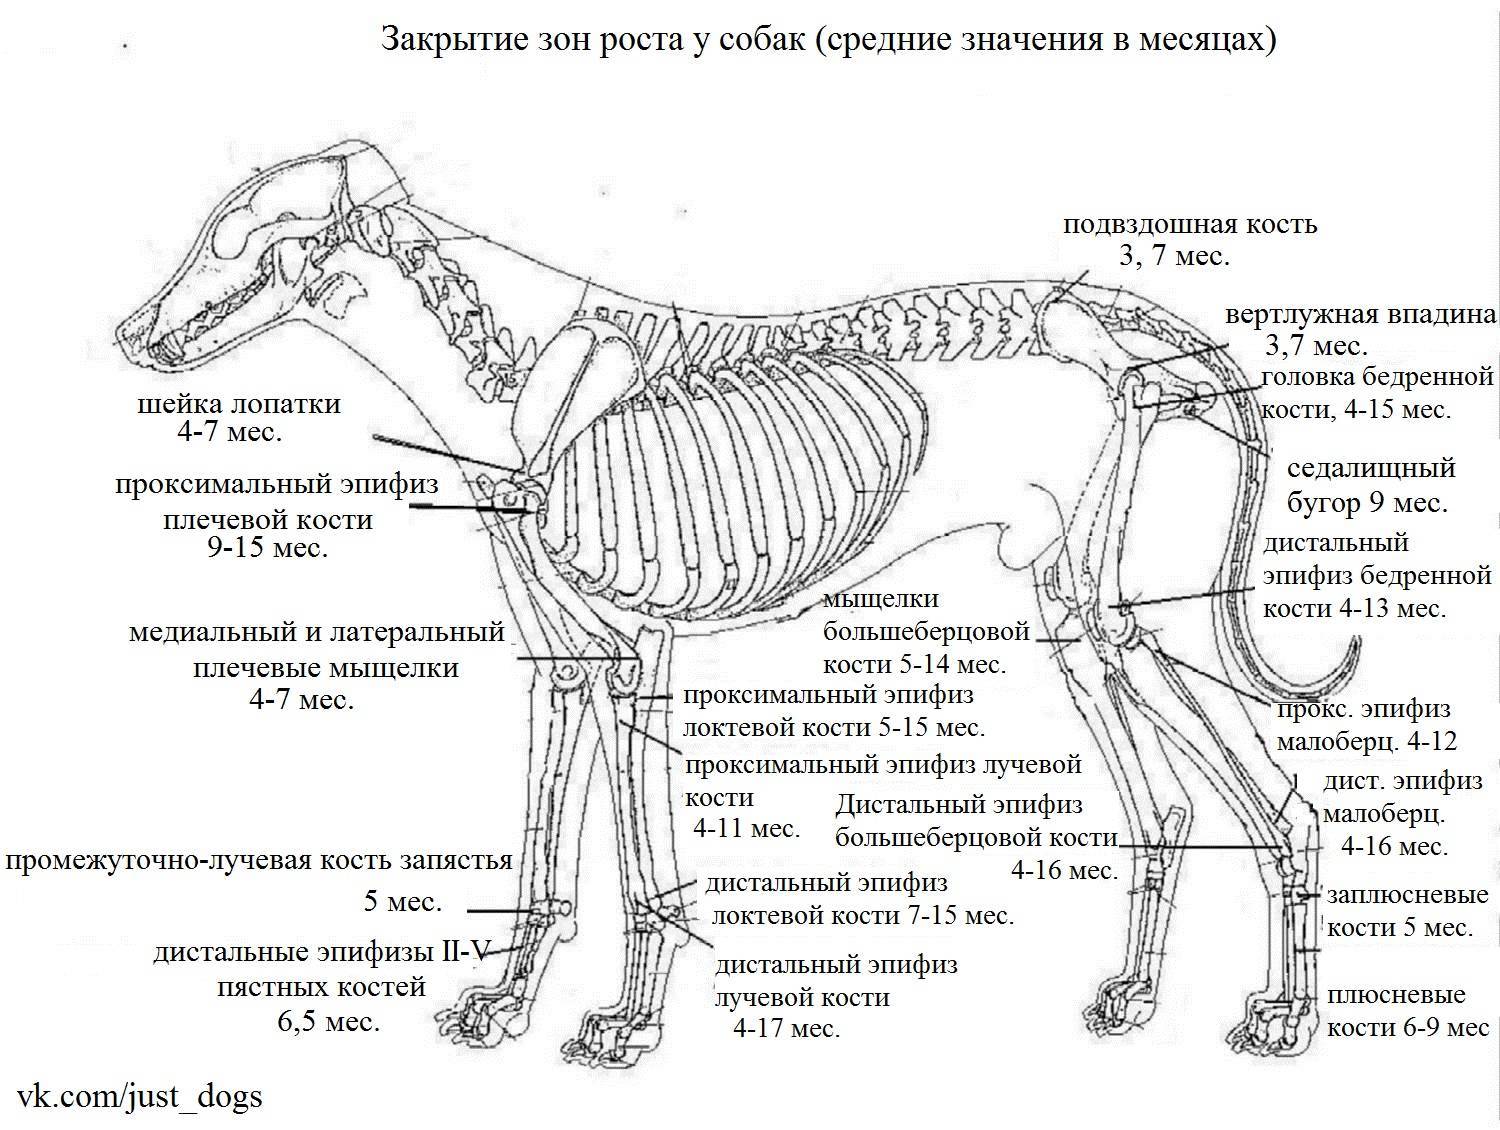 Анатомия собаки: строение скелета и внутренних органов, фото с описанием костей